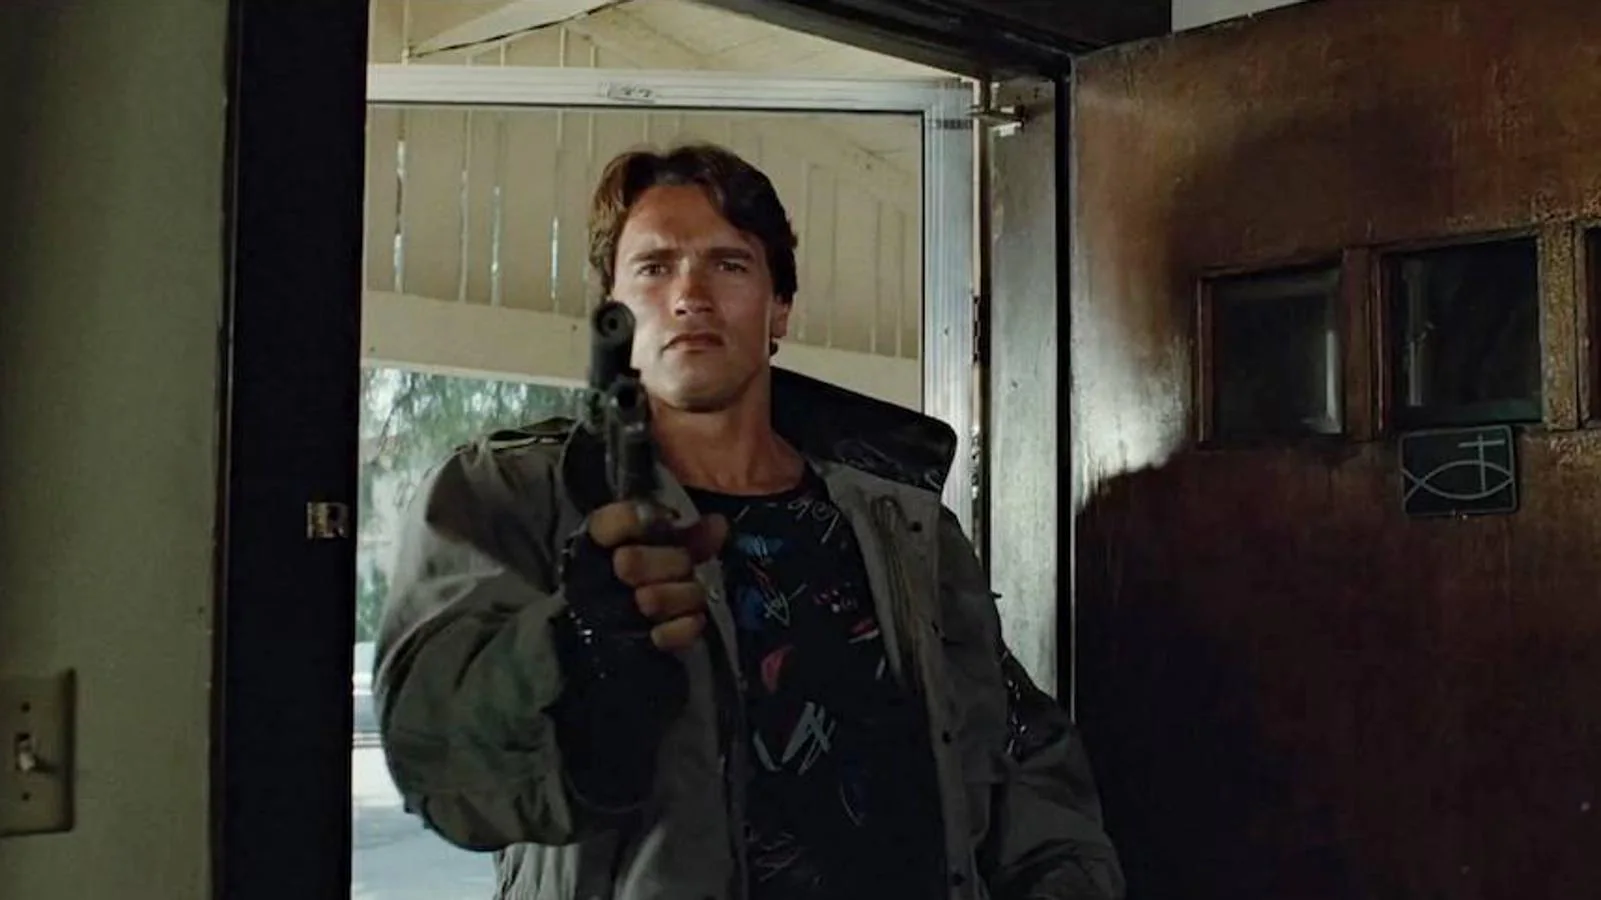 «Terminator». Terminator ha funcionado muy bien como thriller y como película de ciencia ficción. Cabe destacar la mítica frase de Arnold Schwarzenegger: «Volveré».